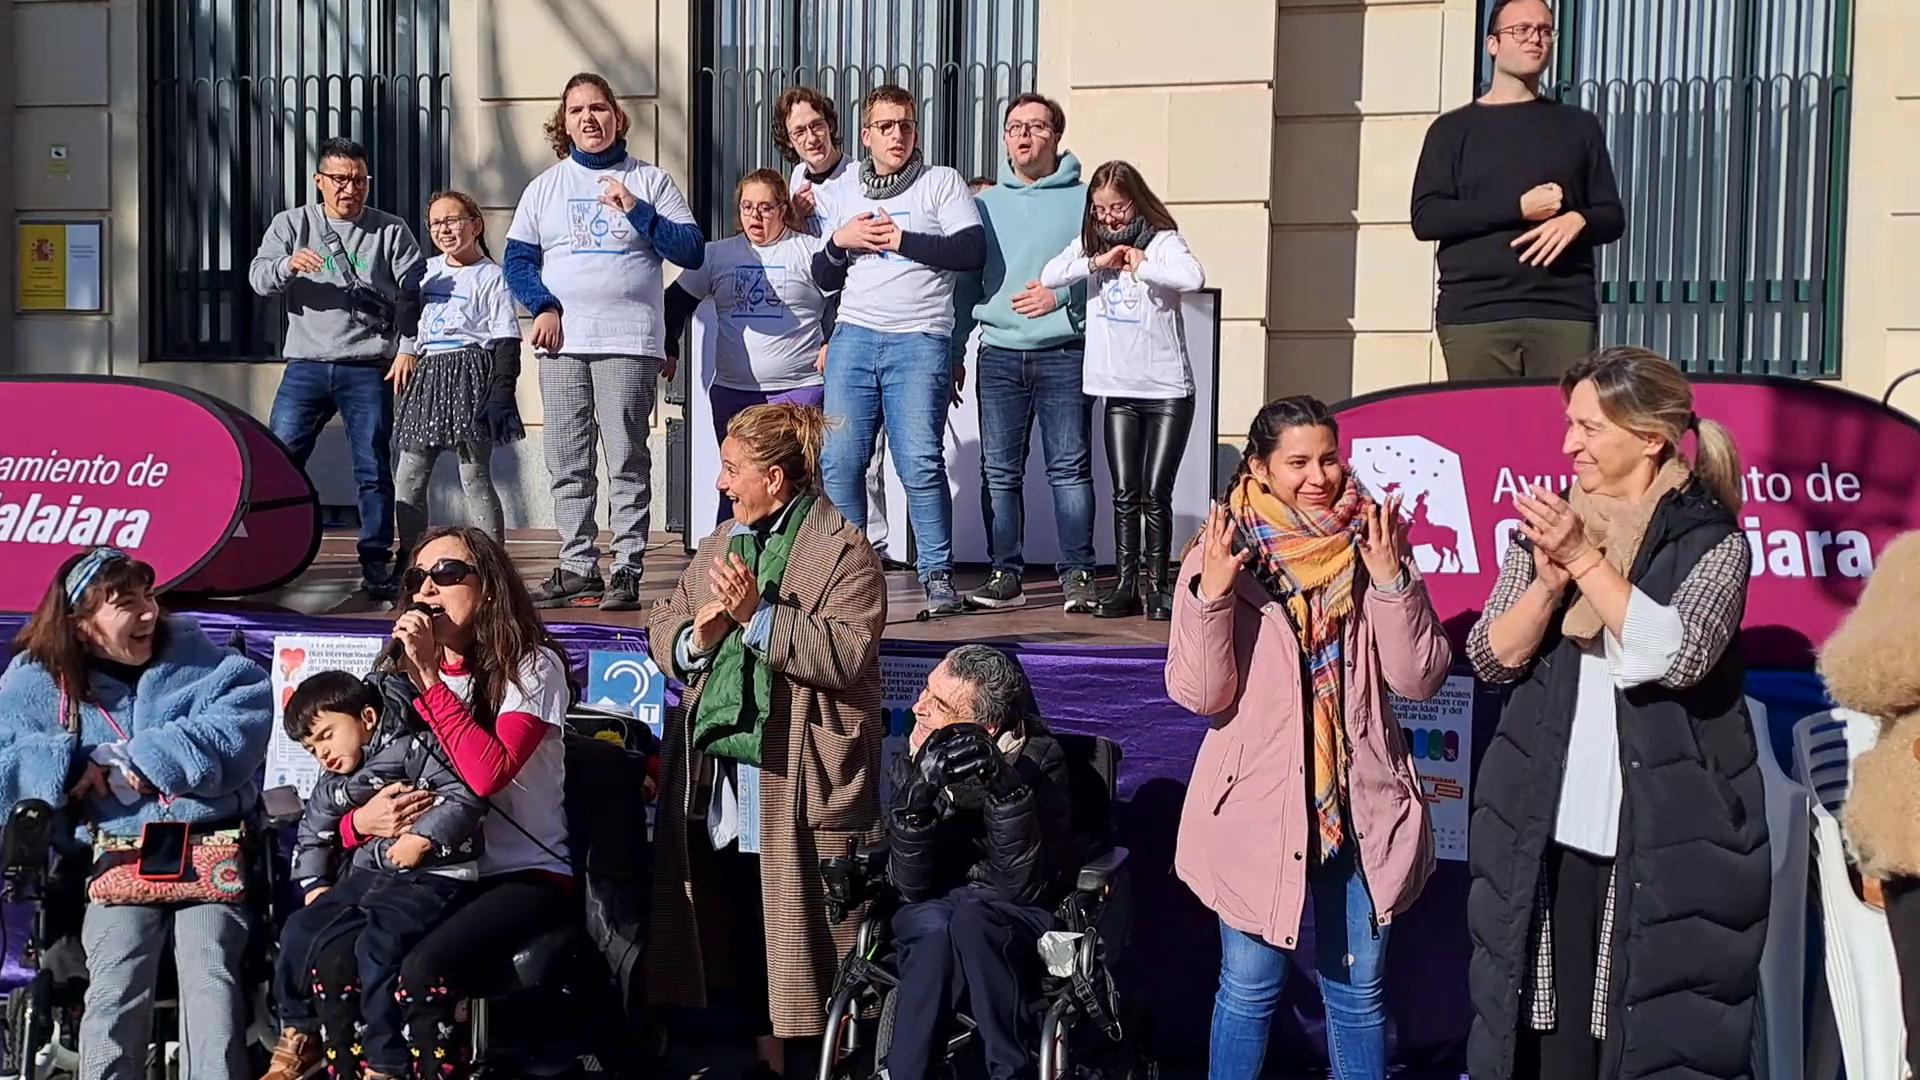 Jornada de reivindicación y gratitud con quienes trabajan por las personas con discapacidad y desde el voluntariado en Guadalajara